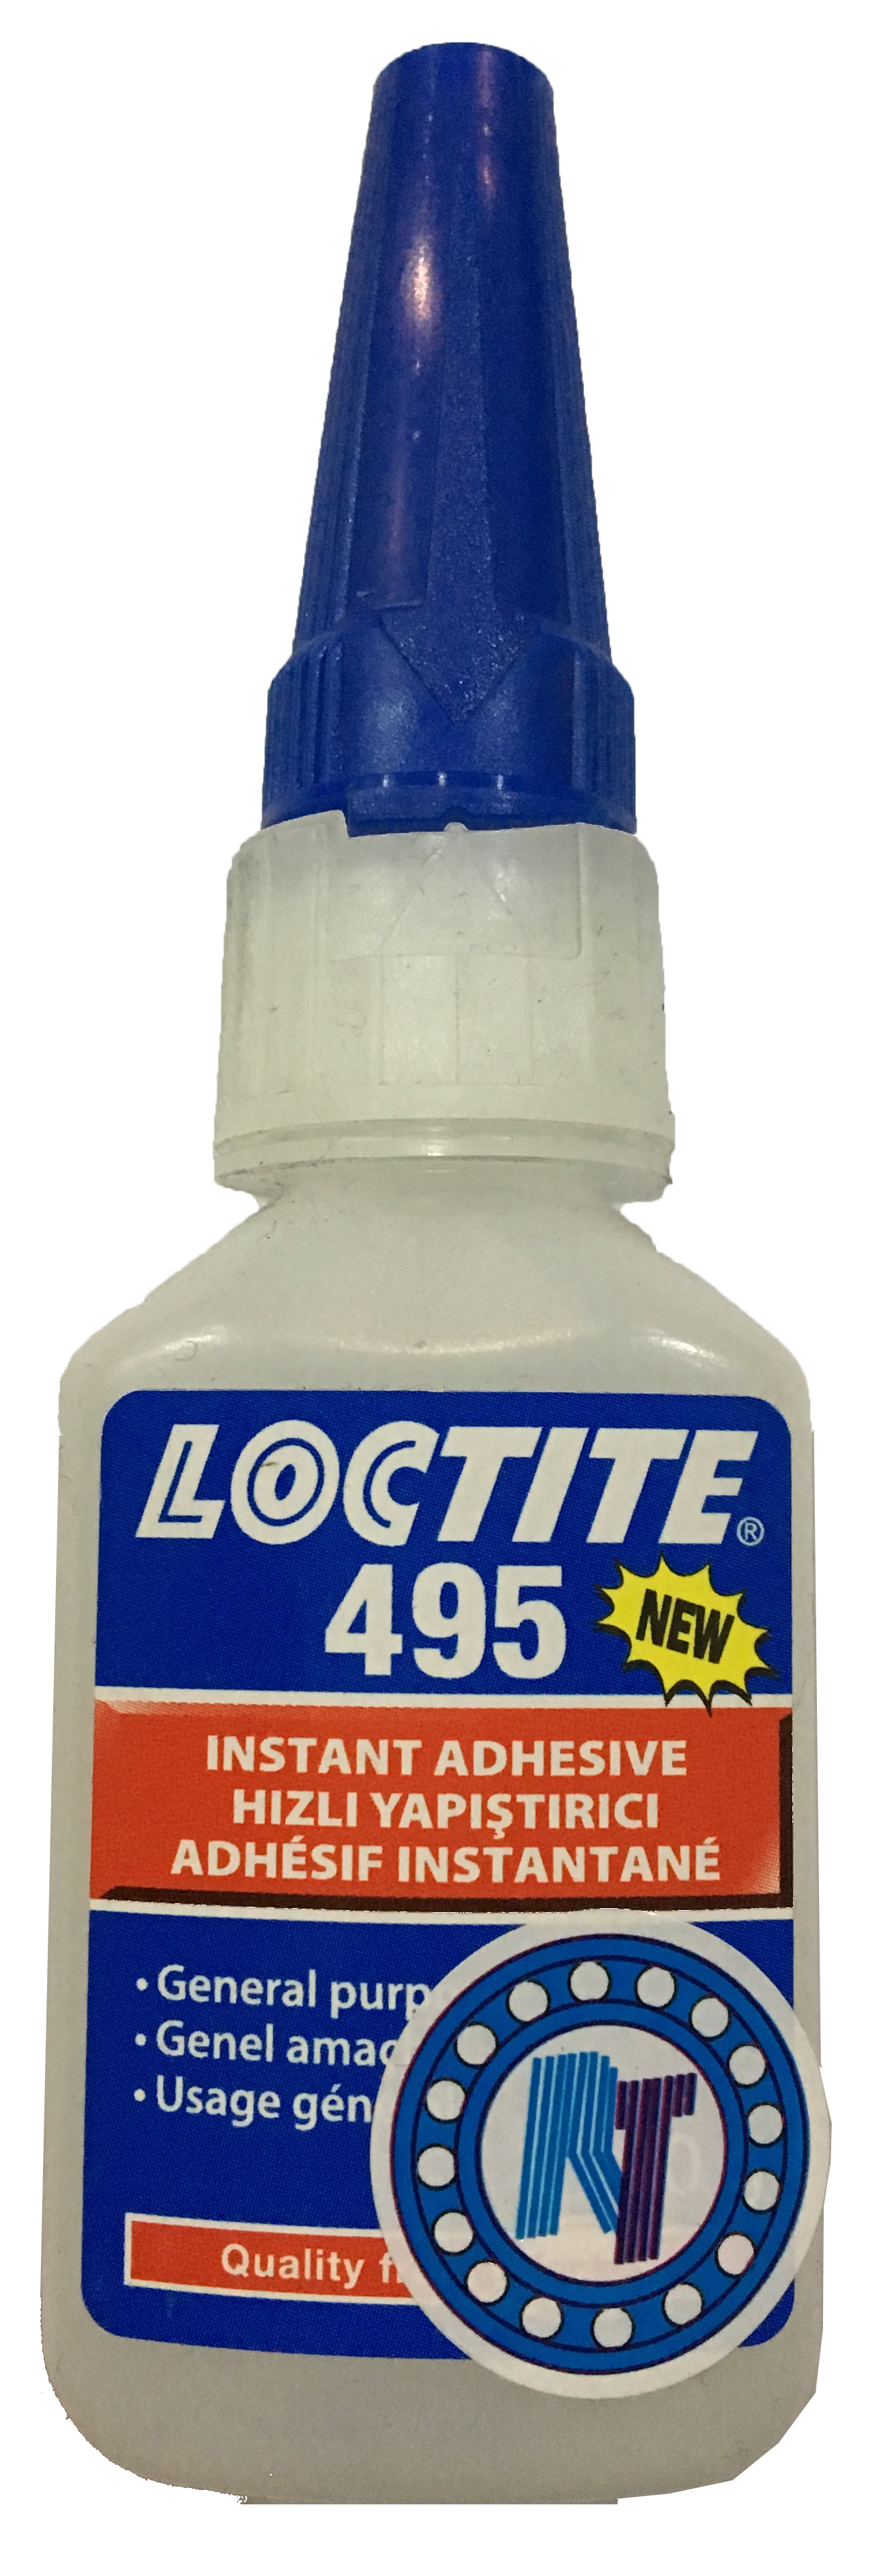 Loctite495,195679,loctite